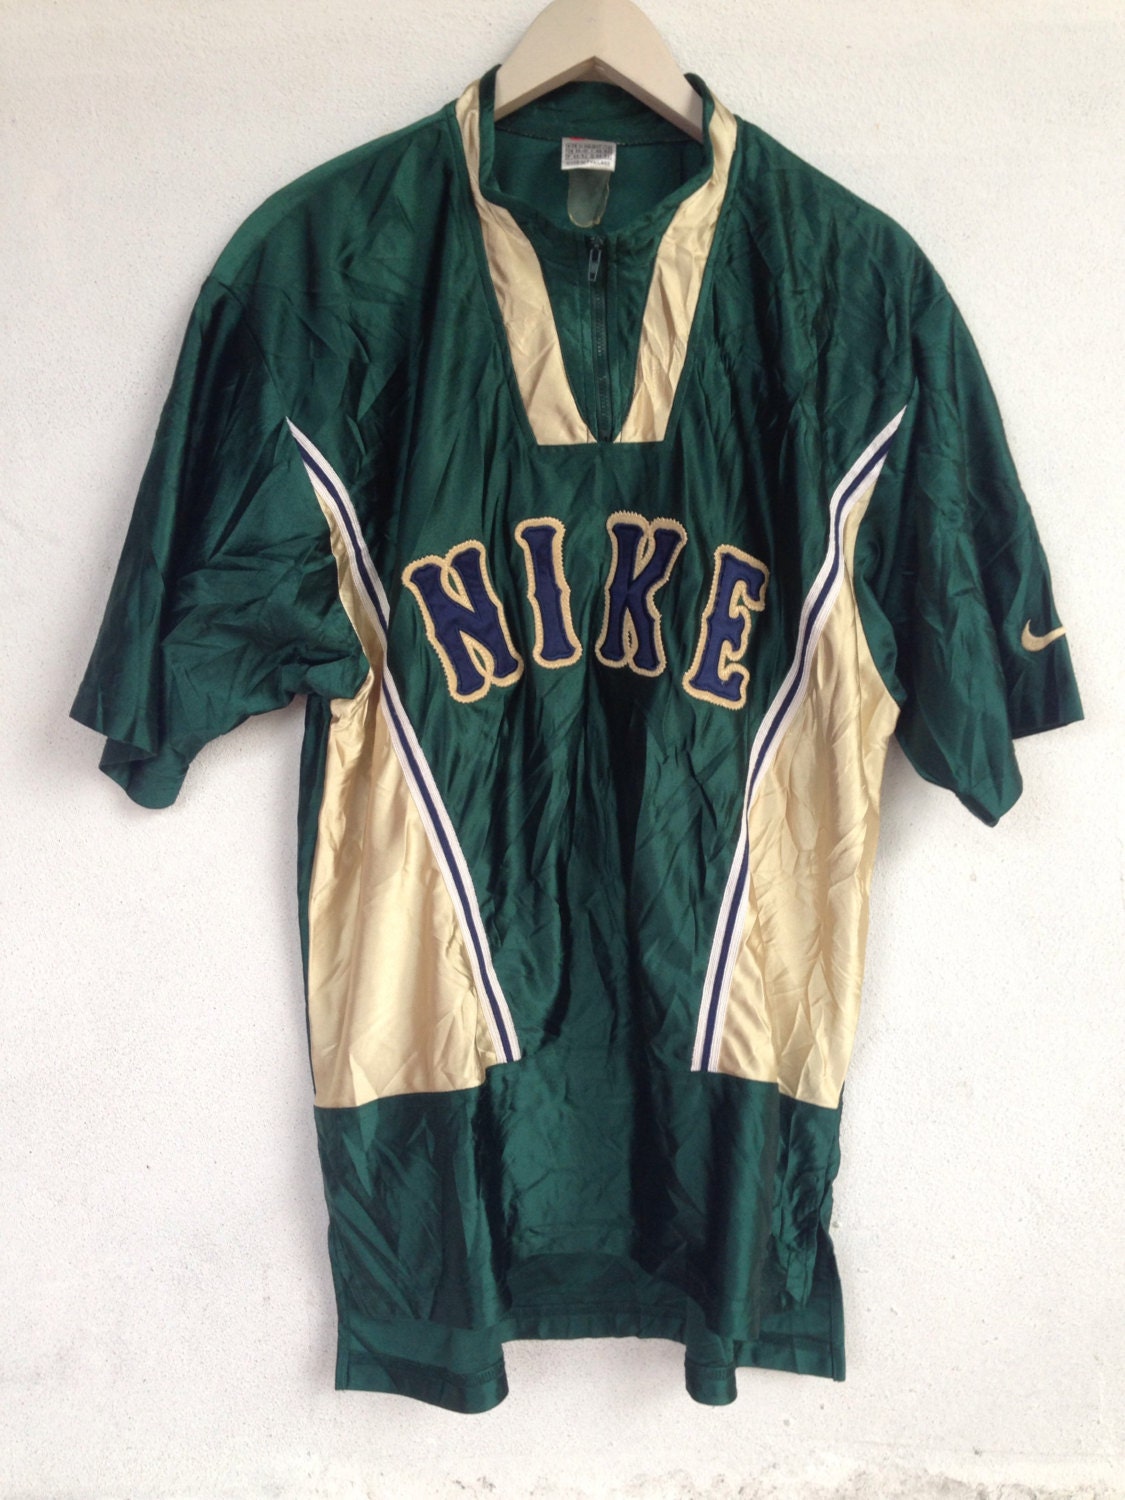 hip hop 90s baseball jersey fashion